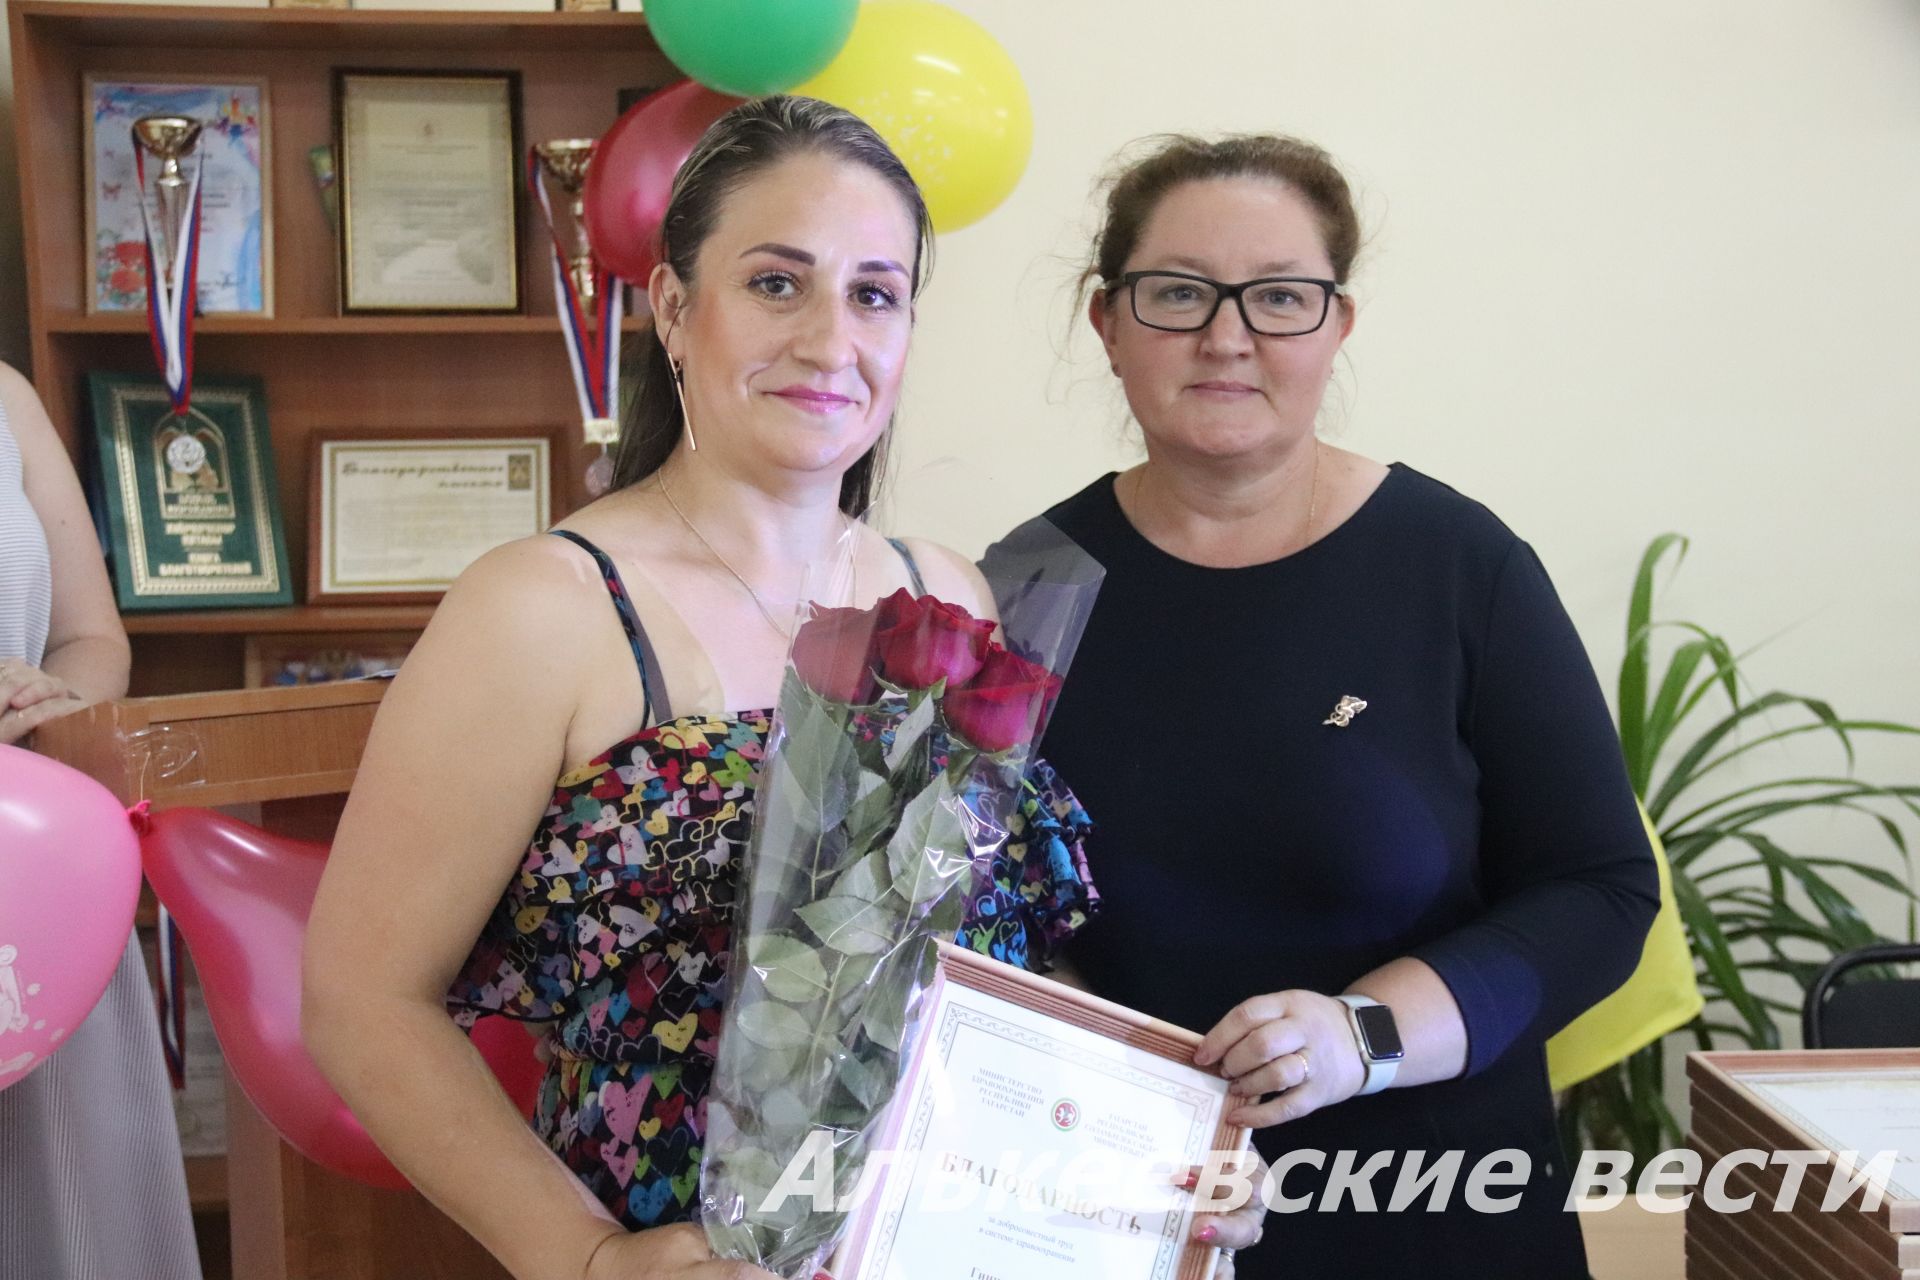 Алькеевский район: Поздравили медицинских работников